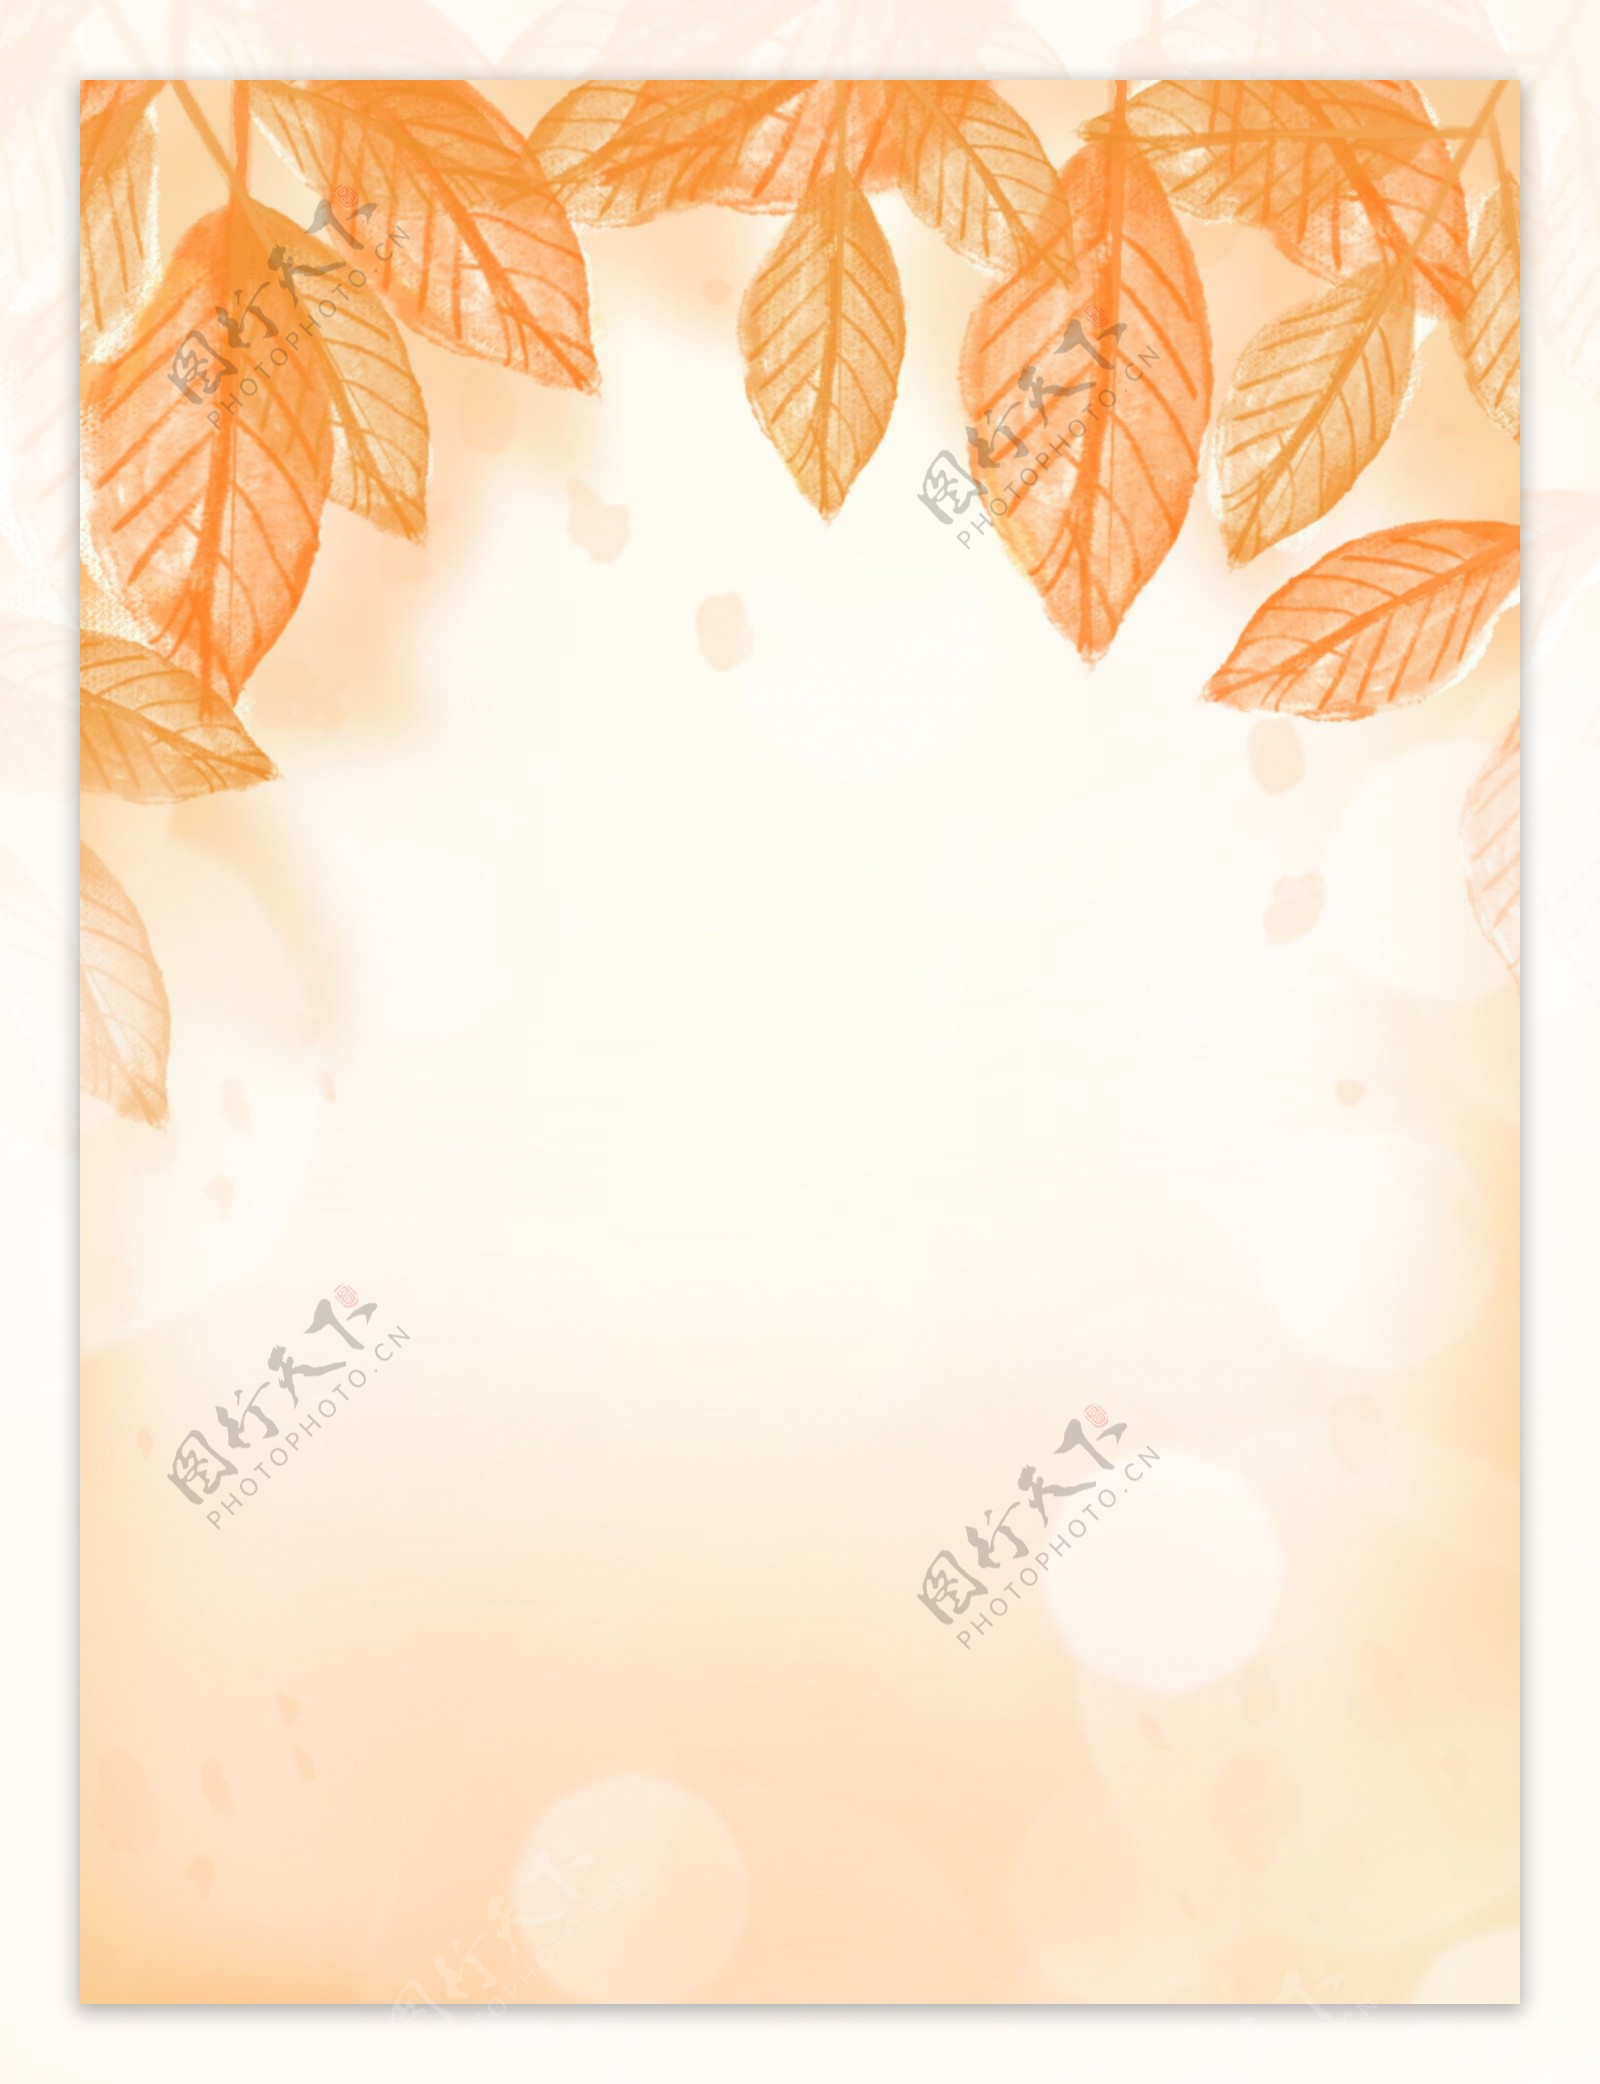 原创手绘秋季金黄色树叶秋叶光斑背景